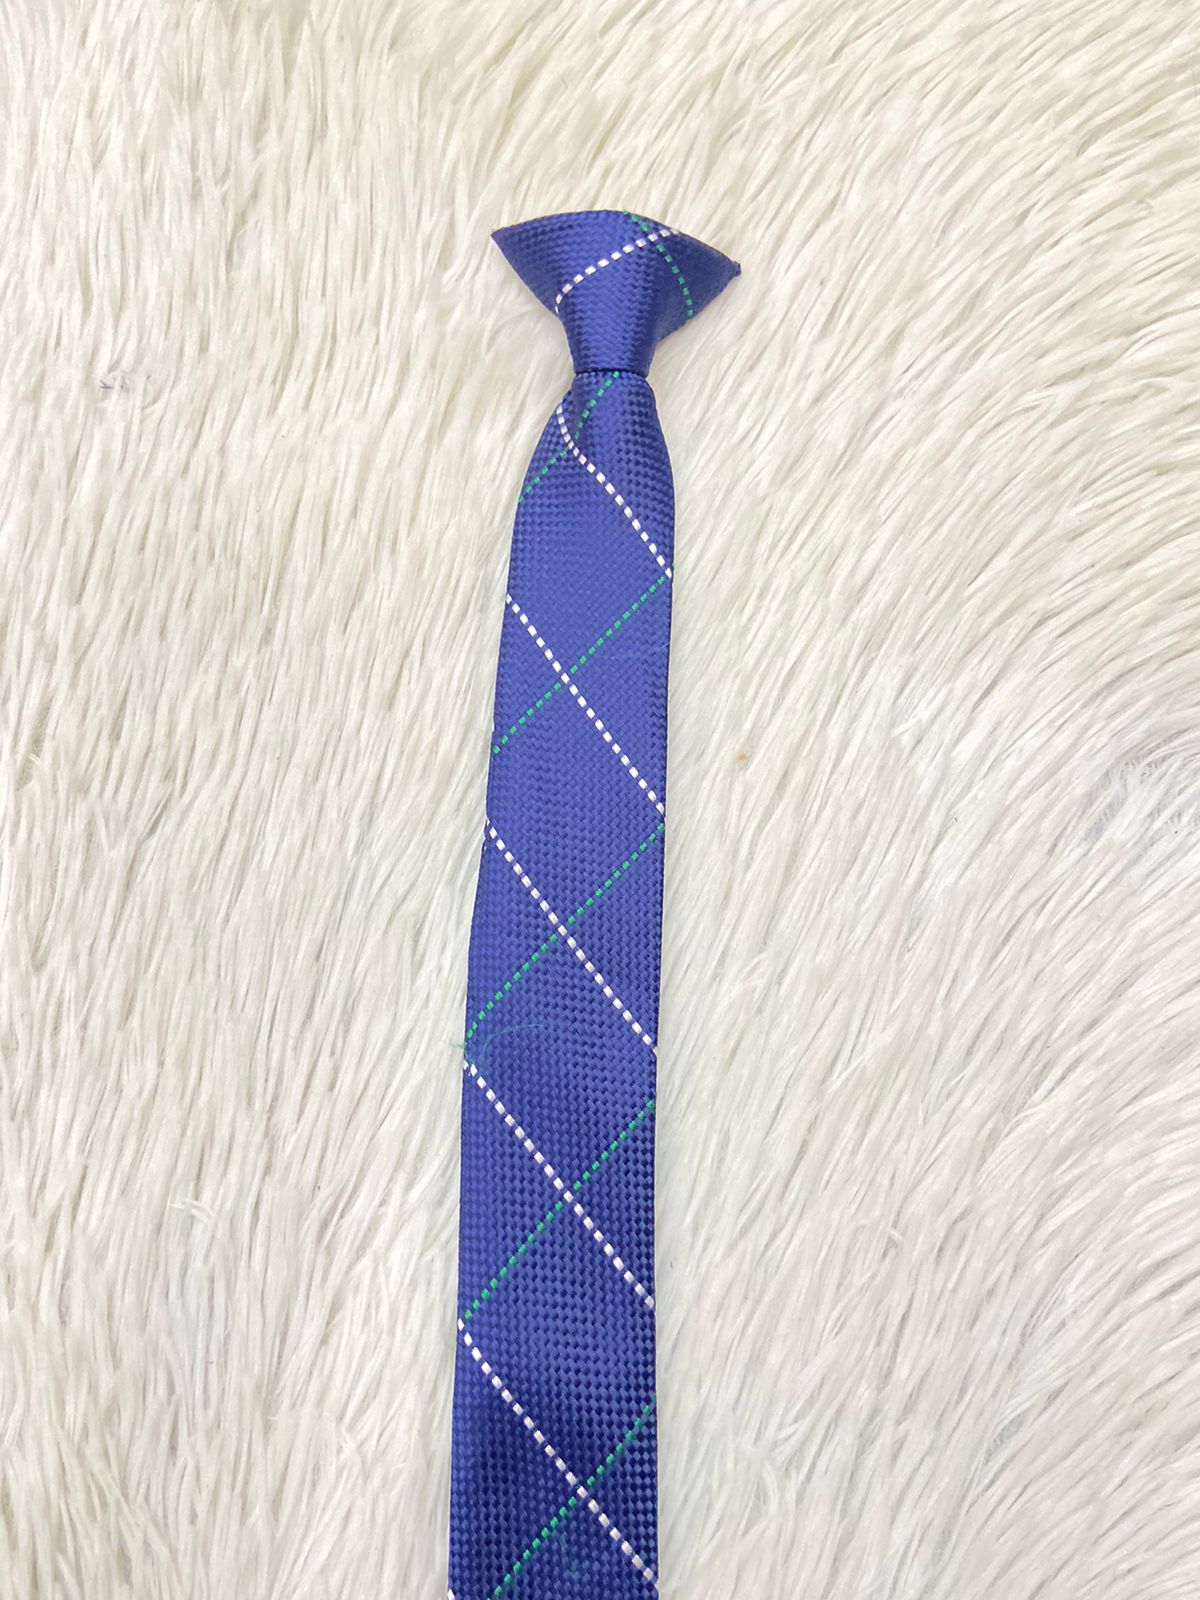 Corbata TOMMY HILFIGER original, azul marino con rayas en puntos blancos y verdes.